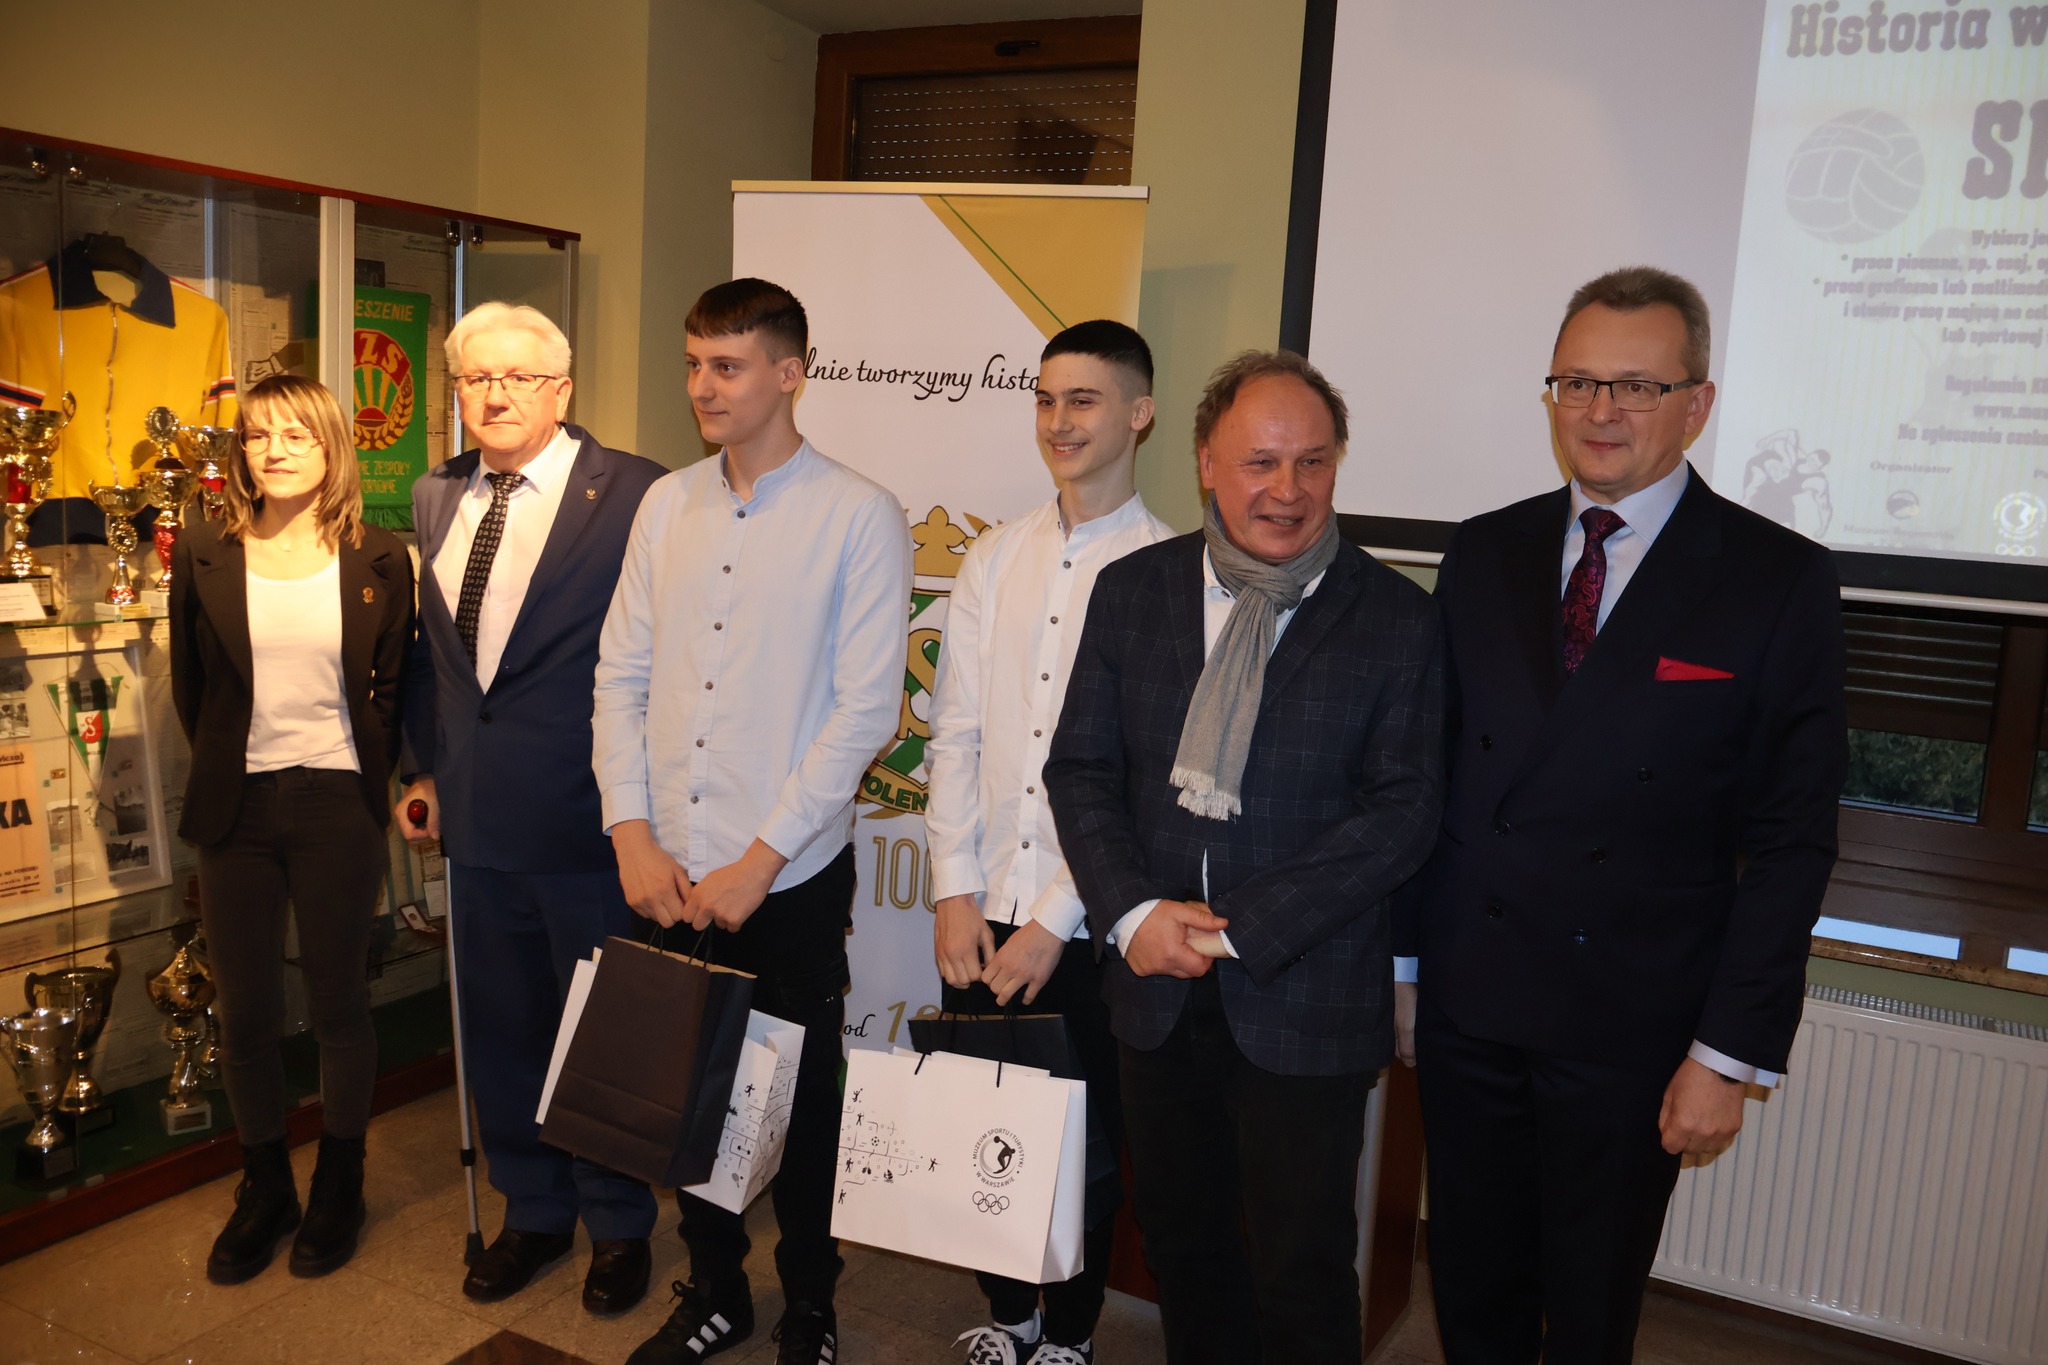 Zwycięzcy w II kategorii - Piotr i Krystian Muszyńscy.